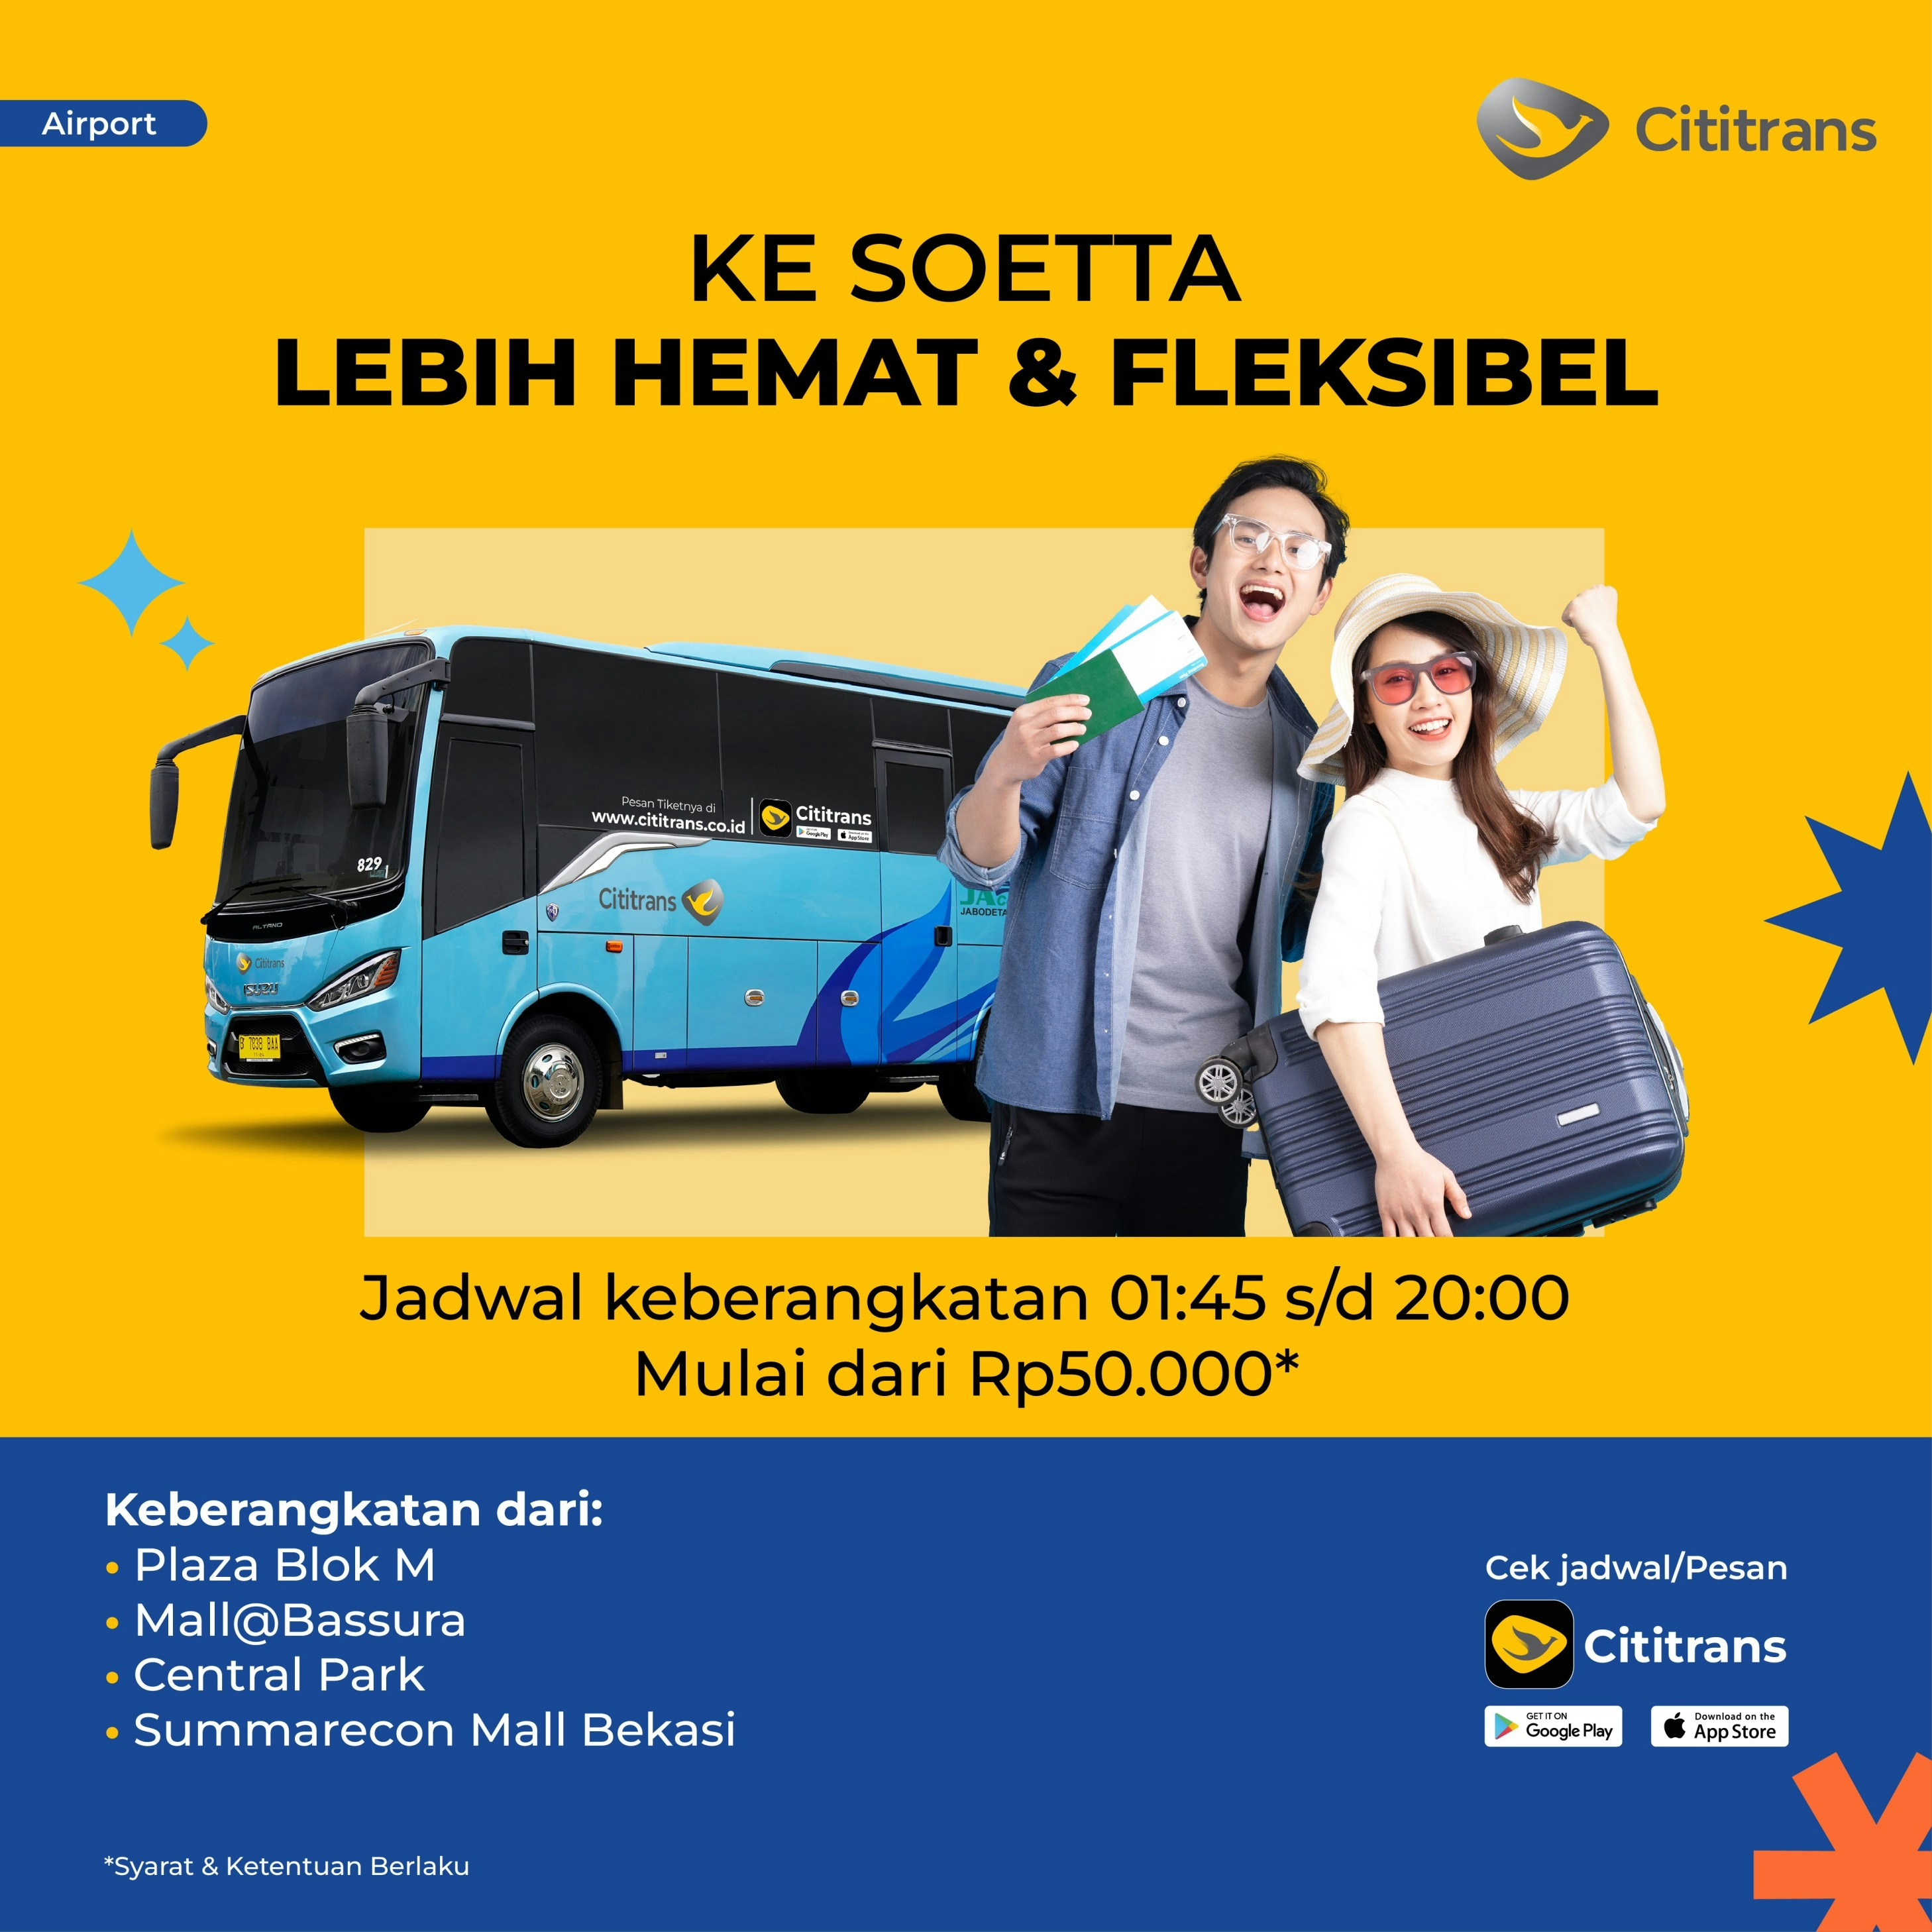 Cititrans Airport Shuttle dari Jakarta & Bekasi